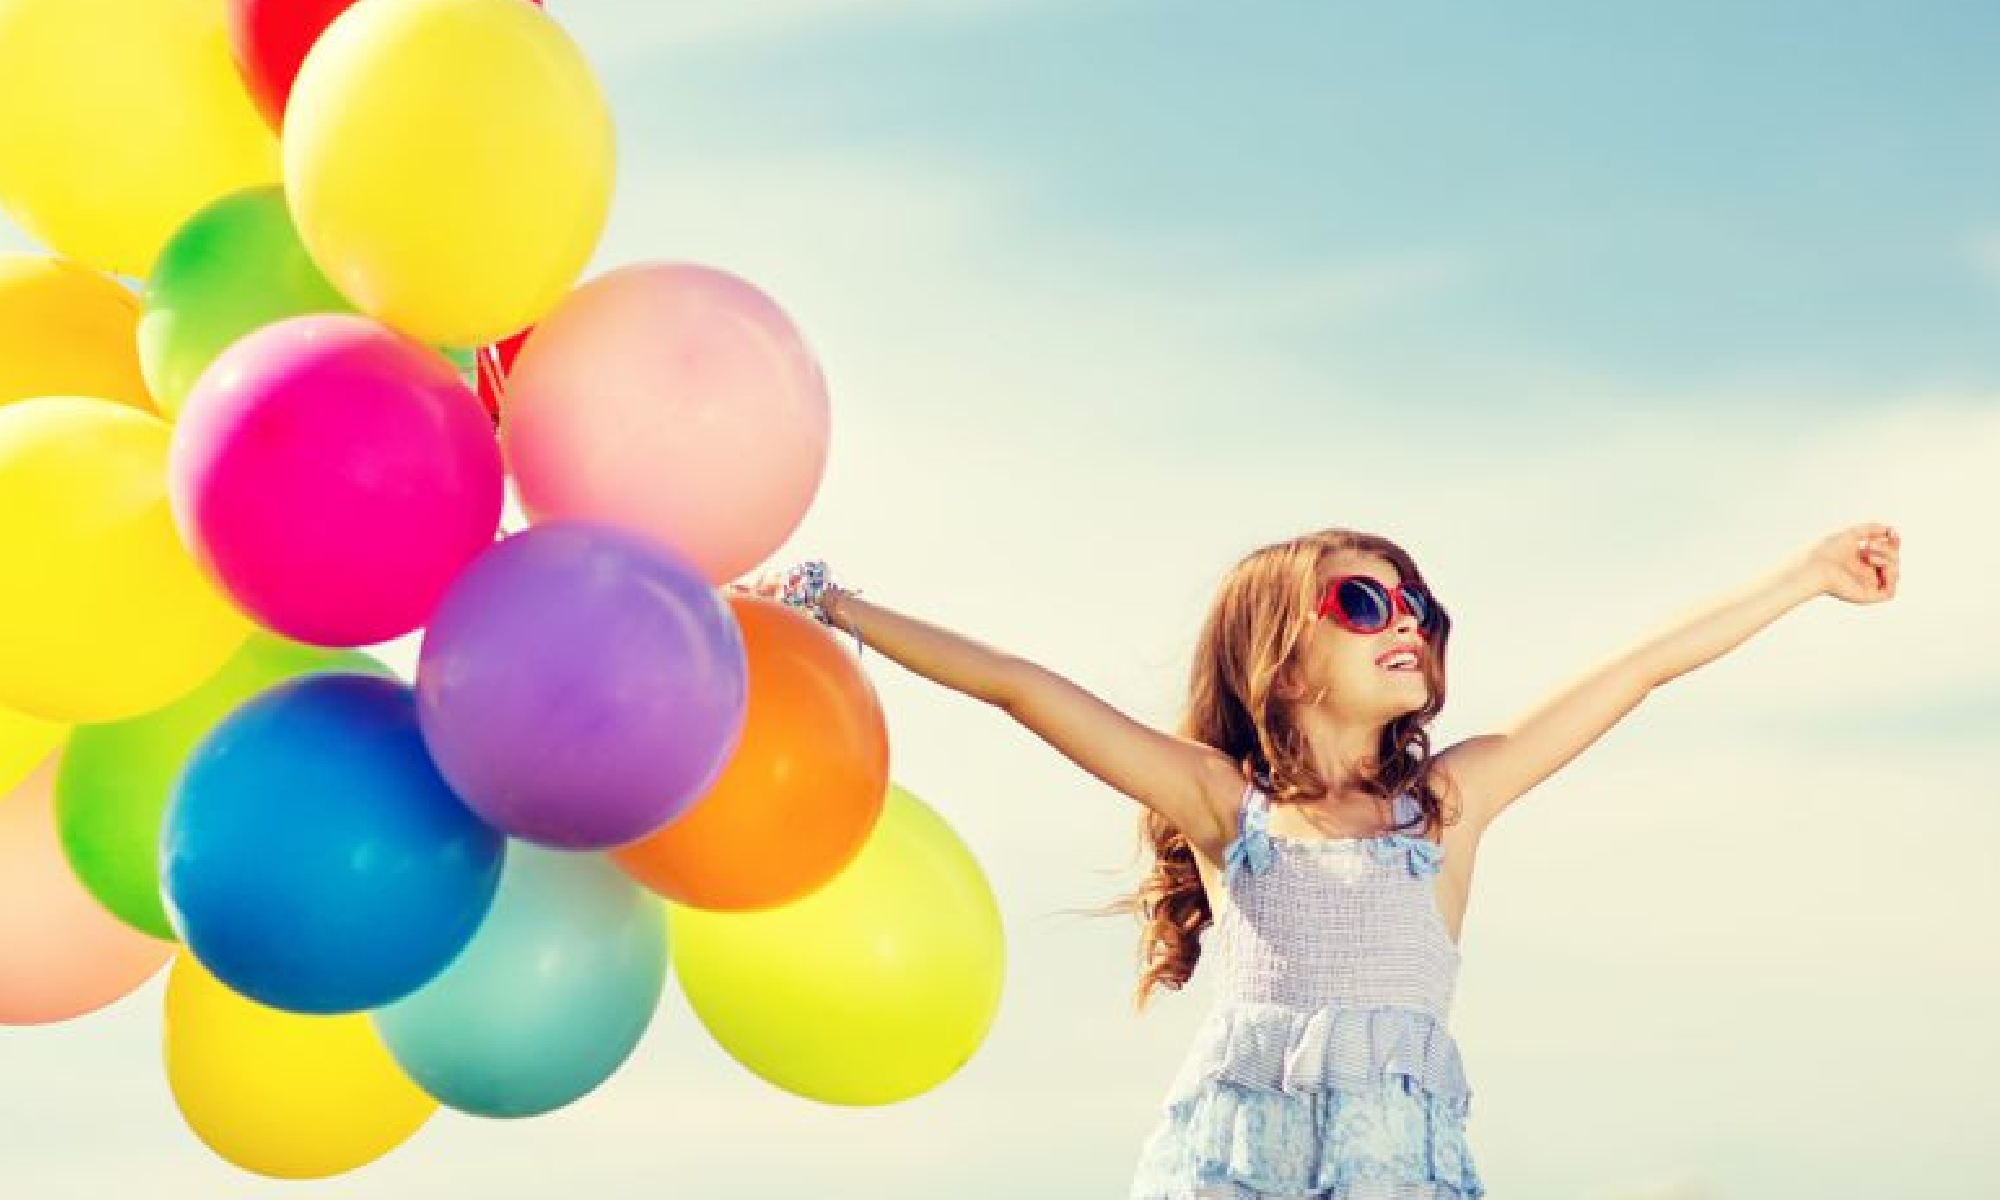 #PraCegoVer imagem de uma menina de óculos escuros segunrando um cacho de balões coloridos. Está escrito: "Qualidade de Vida" e há a logo da Retina Brasil